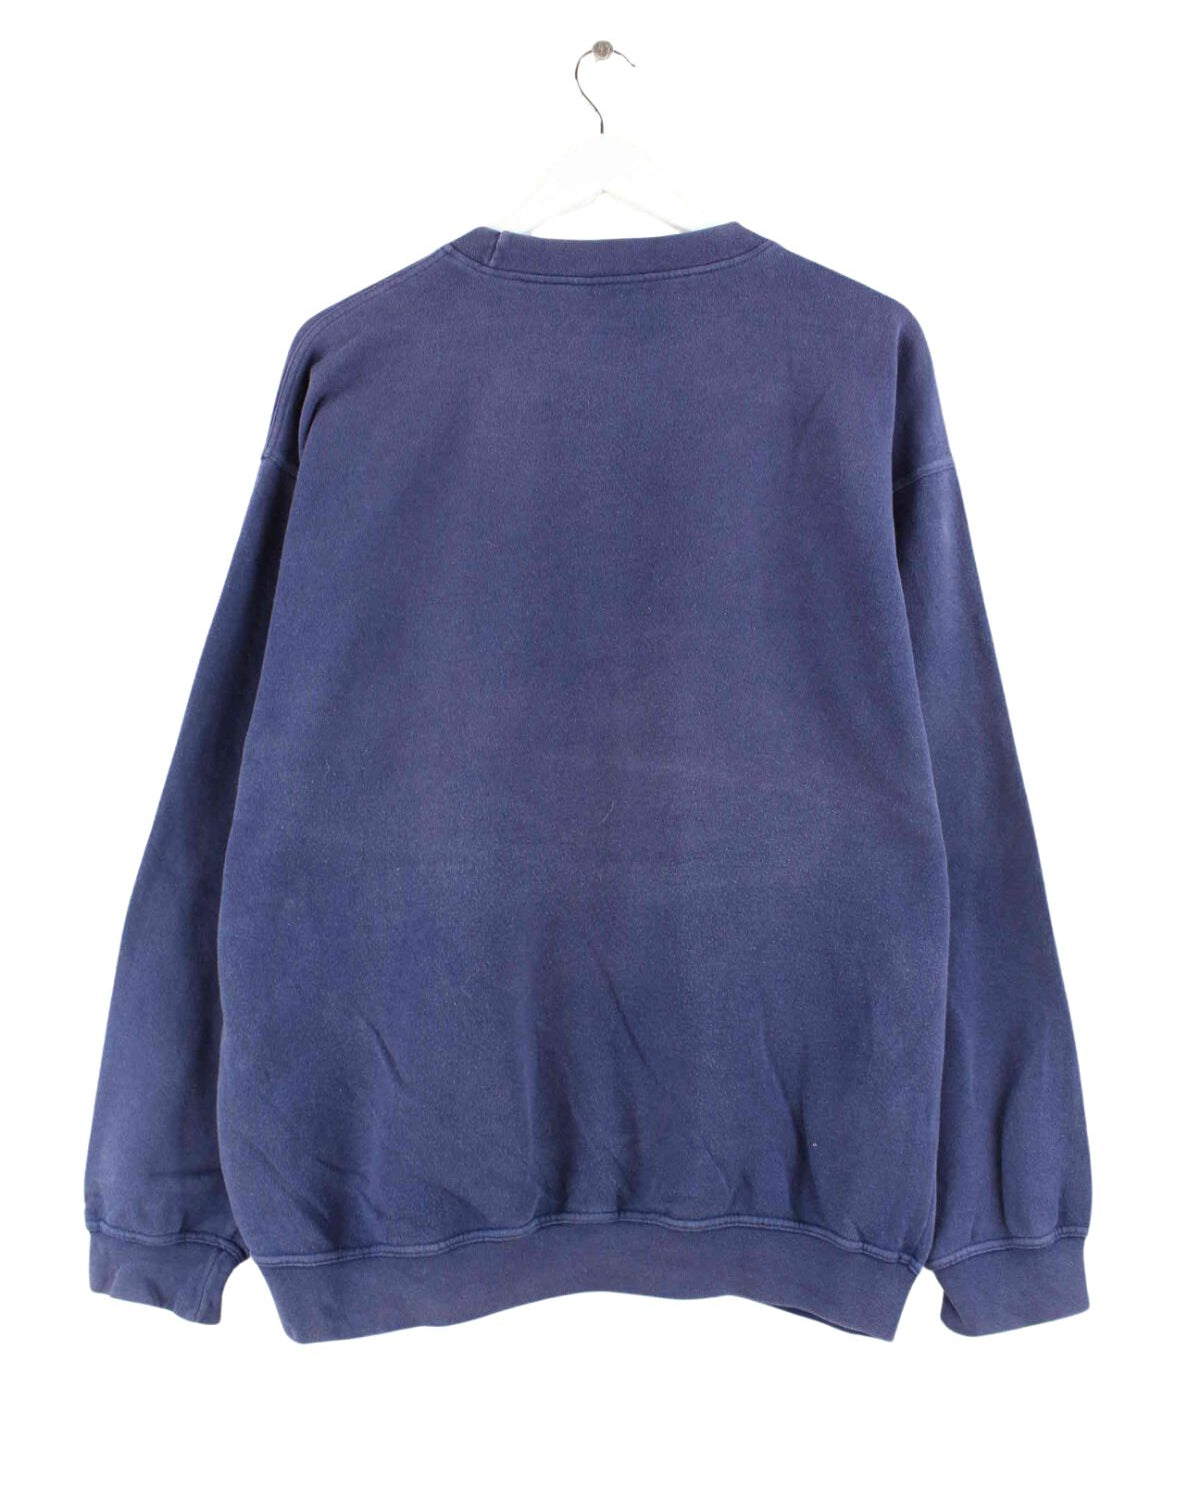 Adidas 90s Vintage Basic Sweater Blau XL (back image)